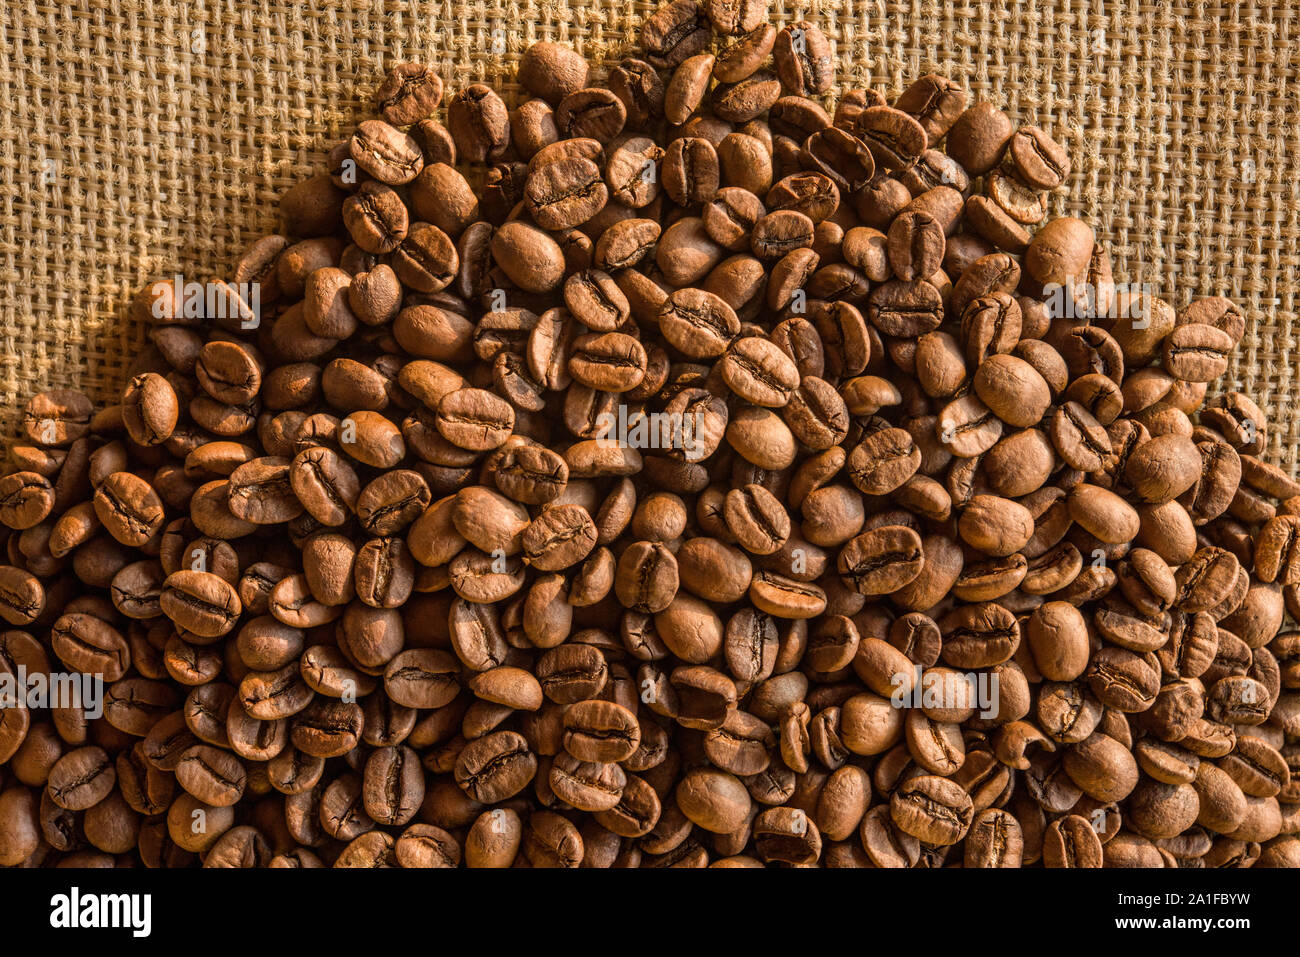 Los mejores granos de café brasileño y en fondo de saco de yute Foto de stock